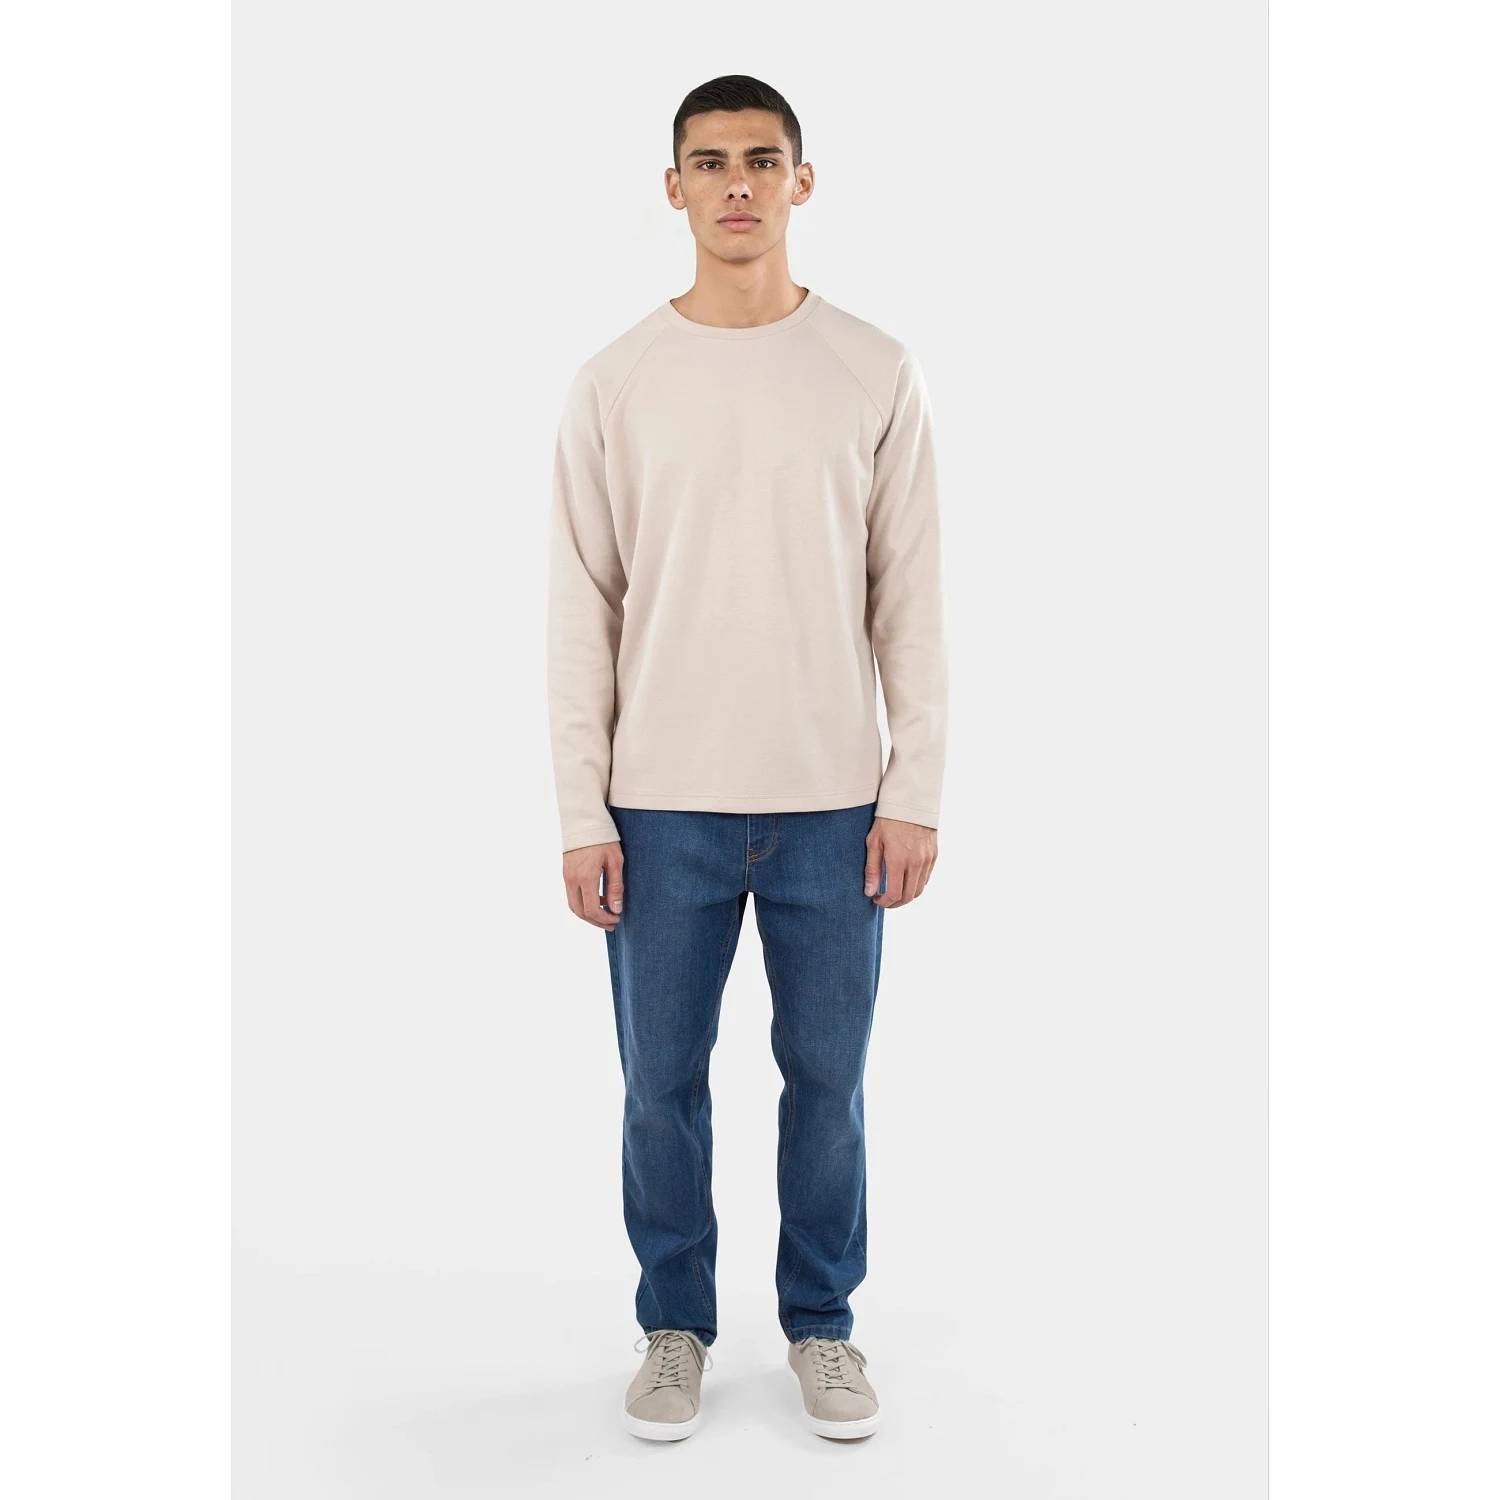 Noel Long Sleeve Sweater - Beige